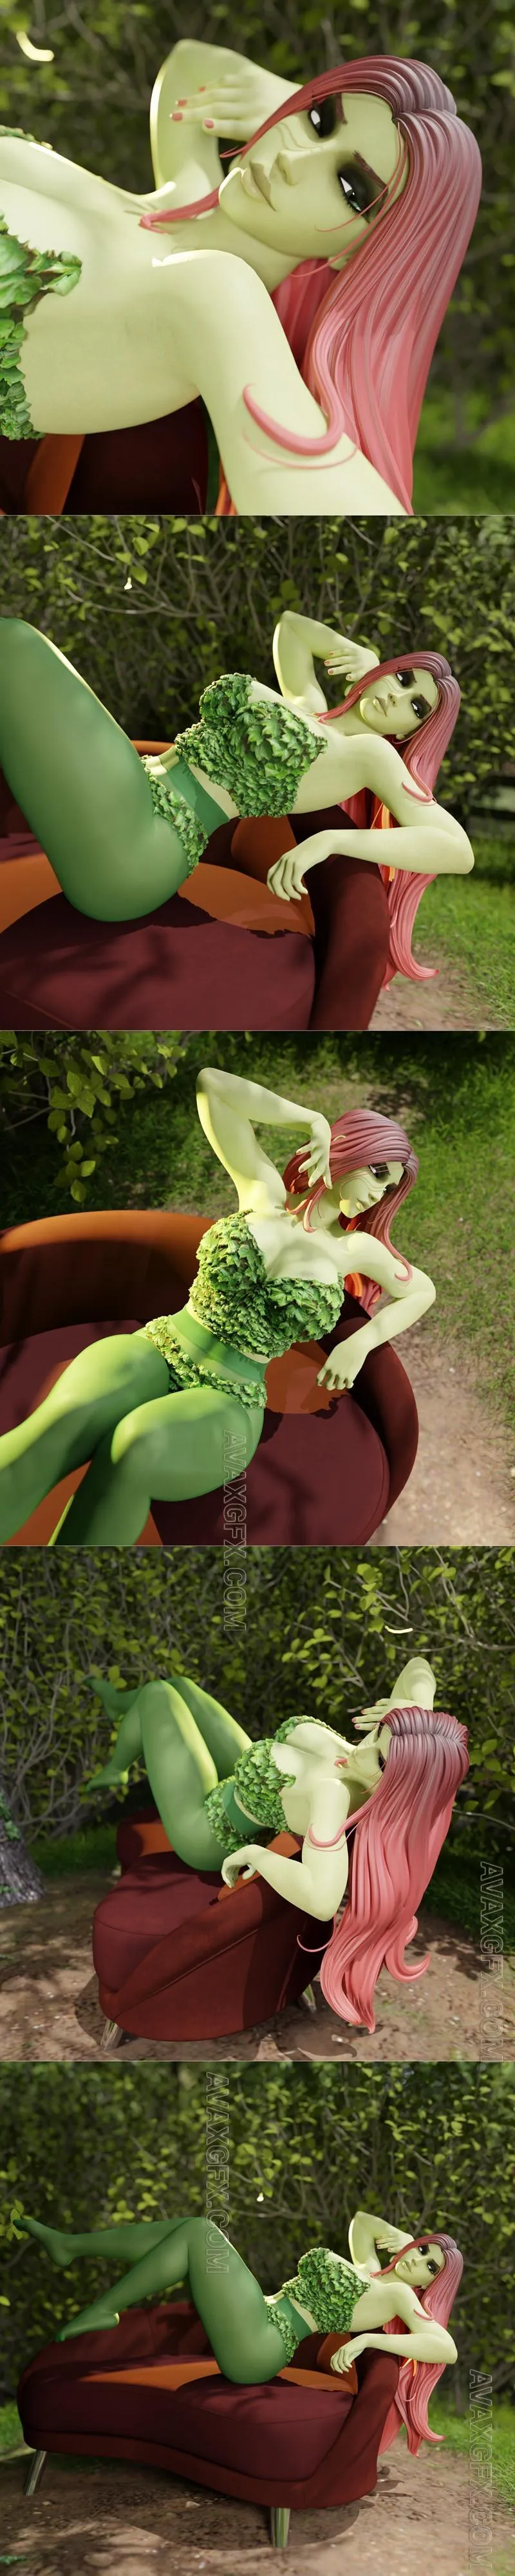 QB Works - Poison Ivy Pose 1 - STL 3D Model